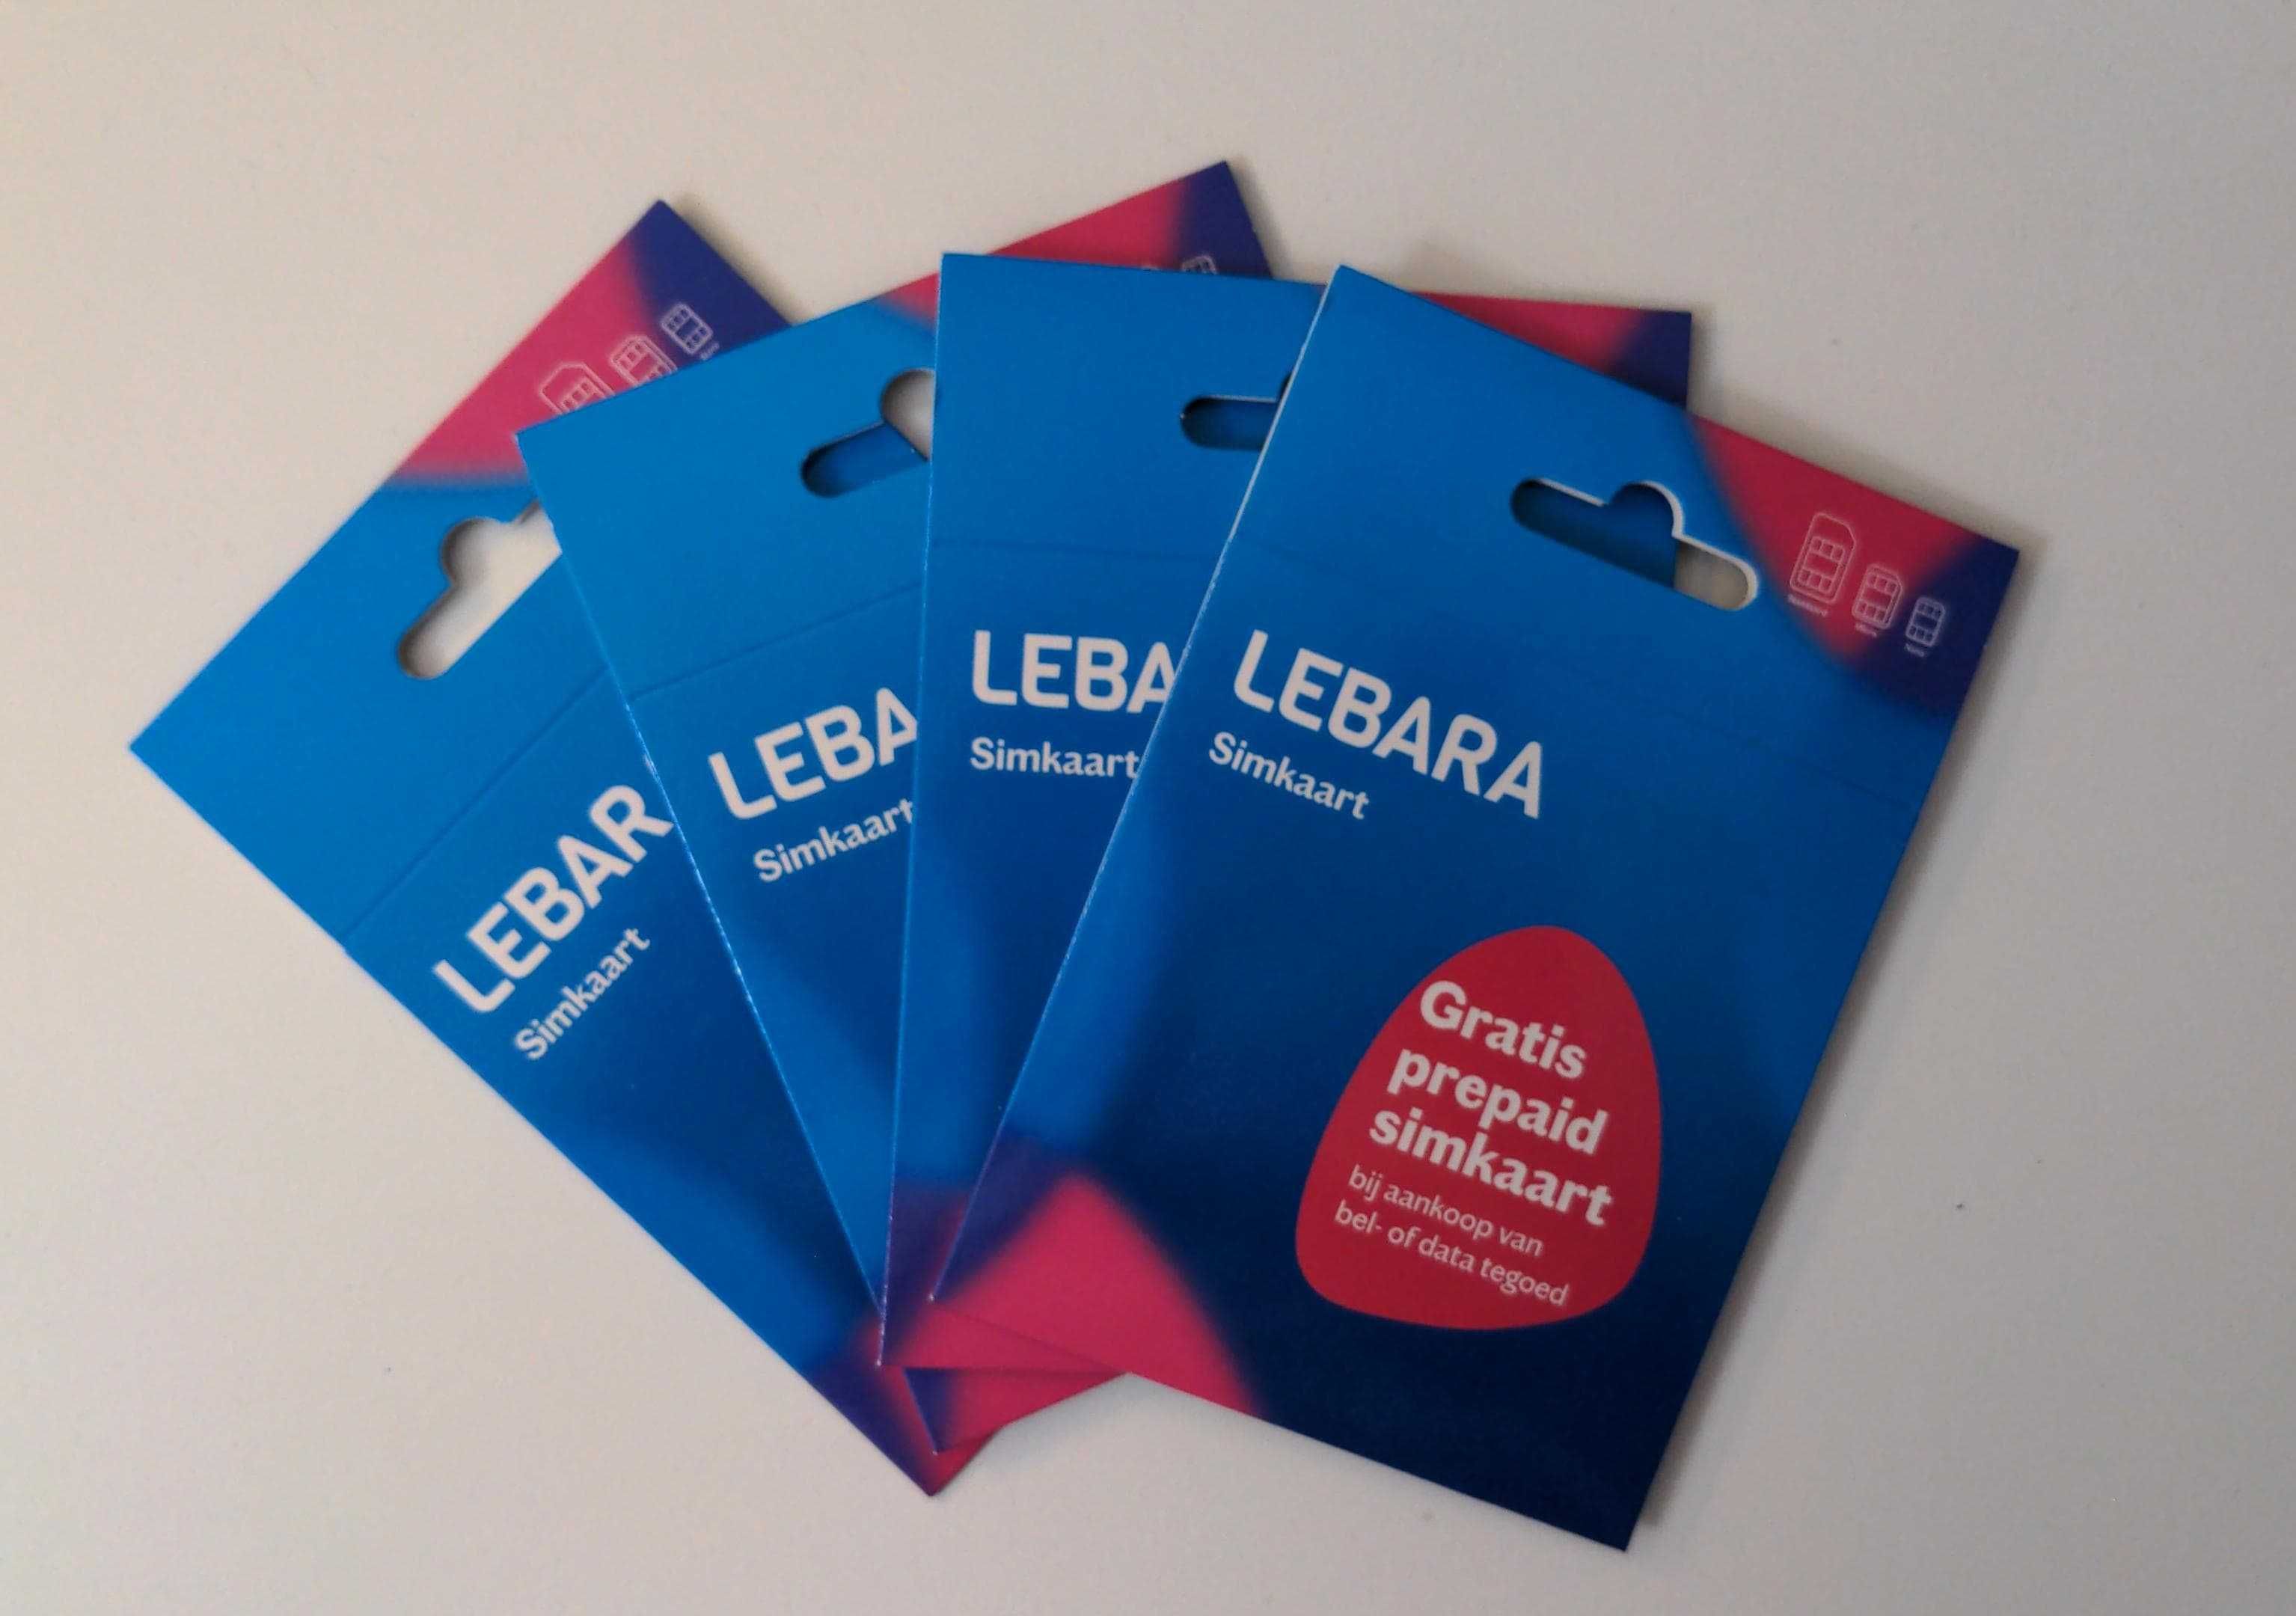 Lebara NL +31 622.844.644 Karta SIM Starter Prepaid fajny numerek LOL